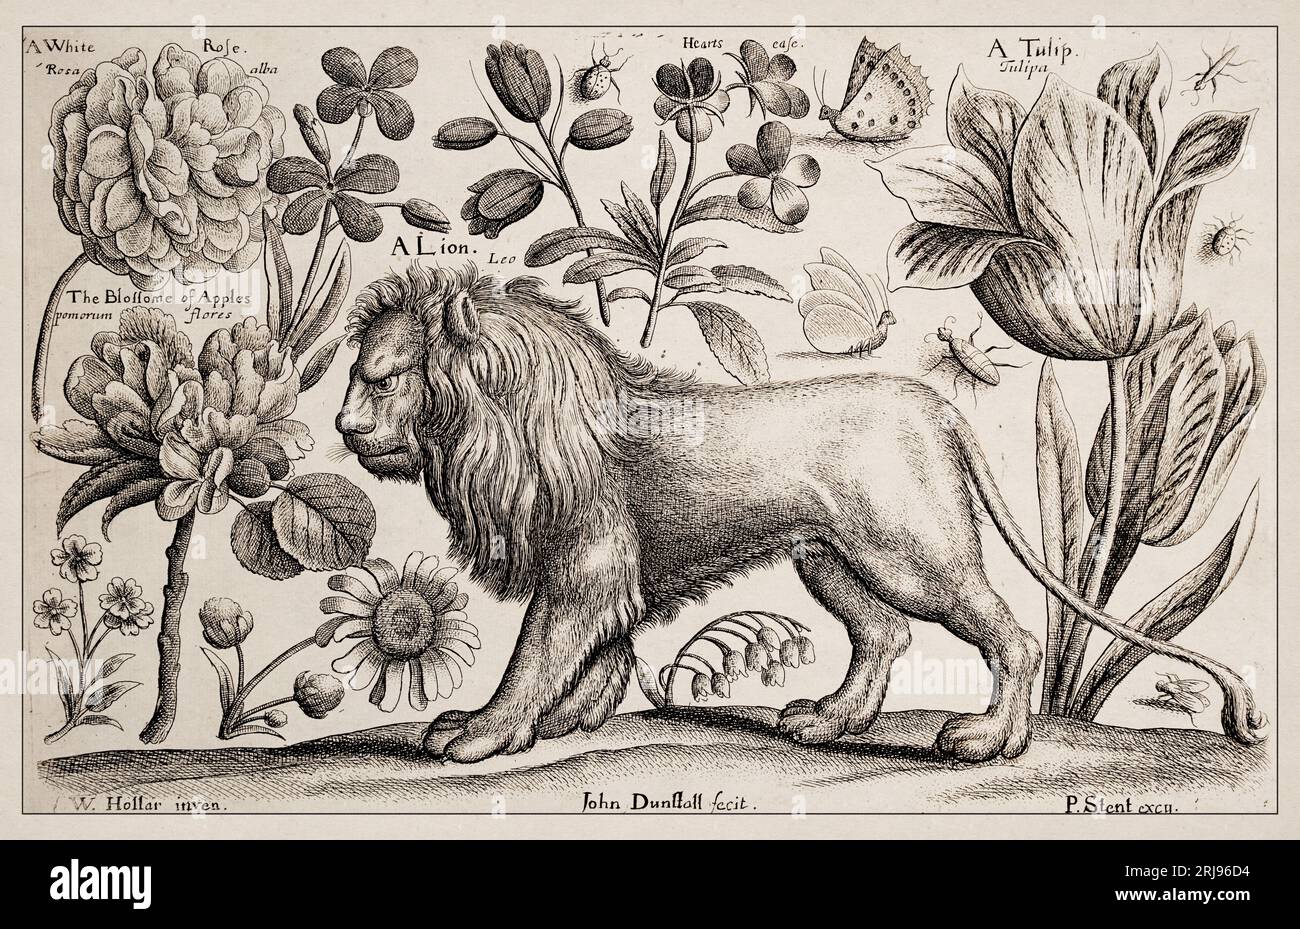 1663 Etching di Wenceslaus Hollar. Squisita rappresentazione antica di soggetti zoologici e botanici, finemente dettagliata su uno sfondo seppia. Un Lio Foto Stock